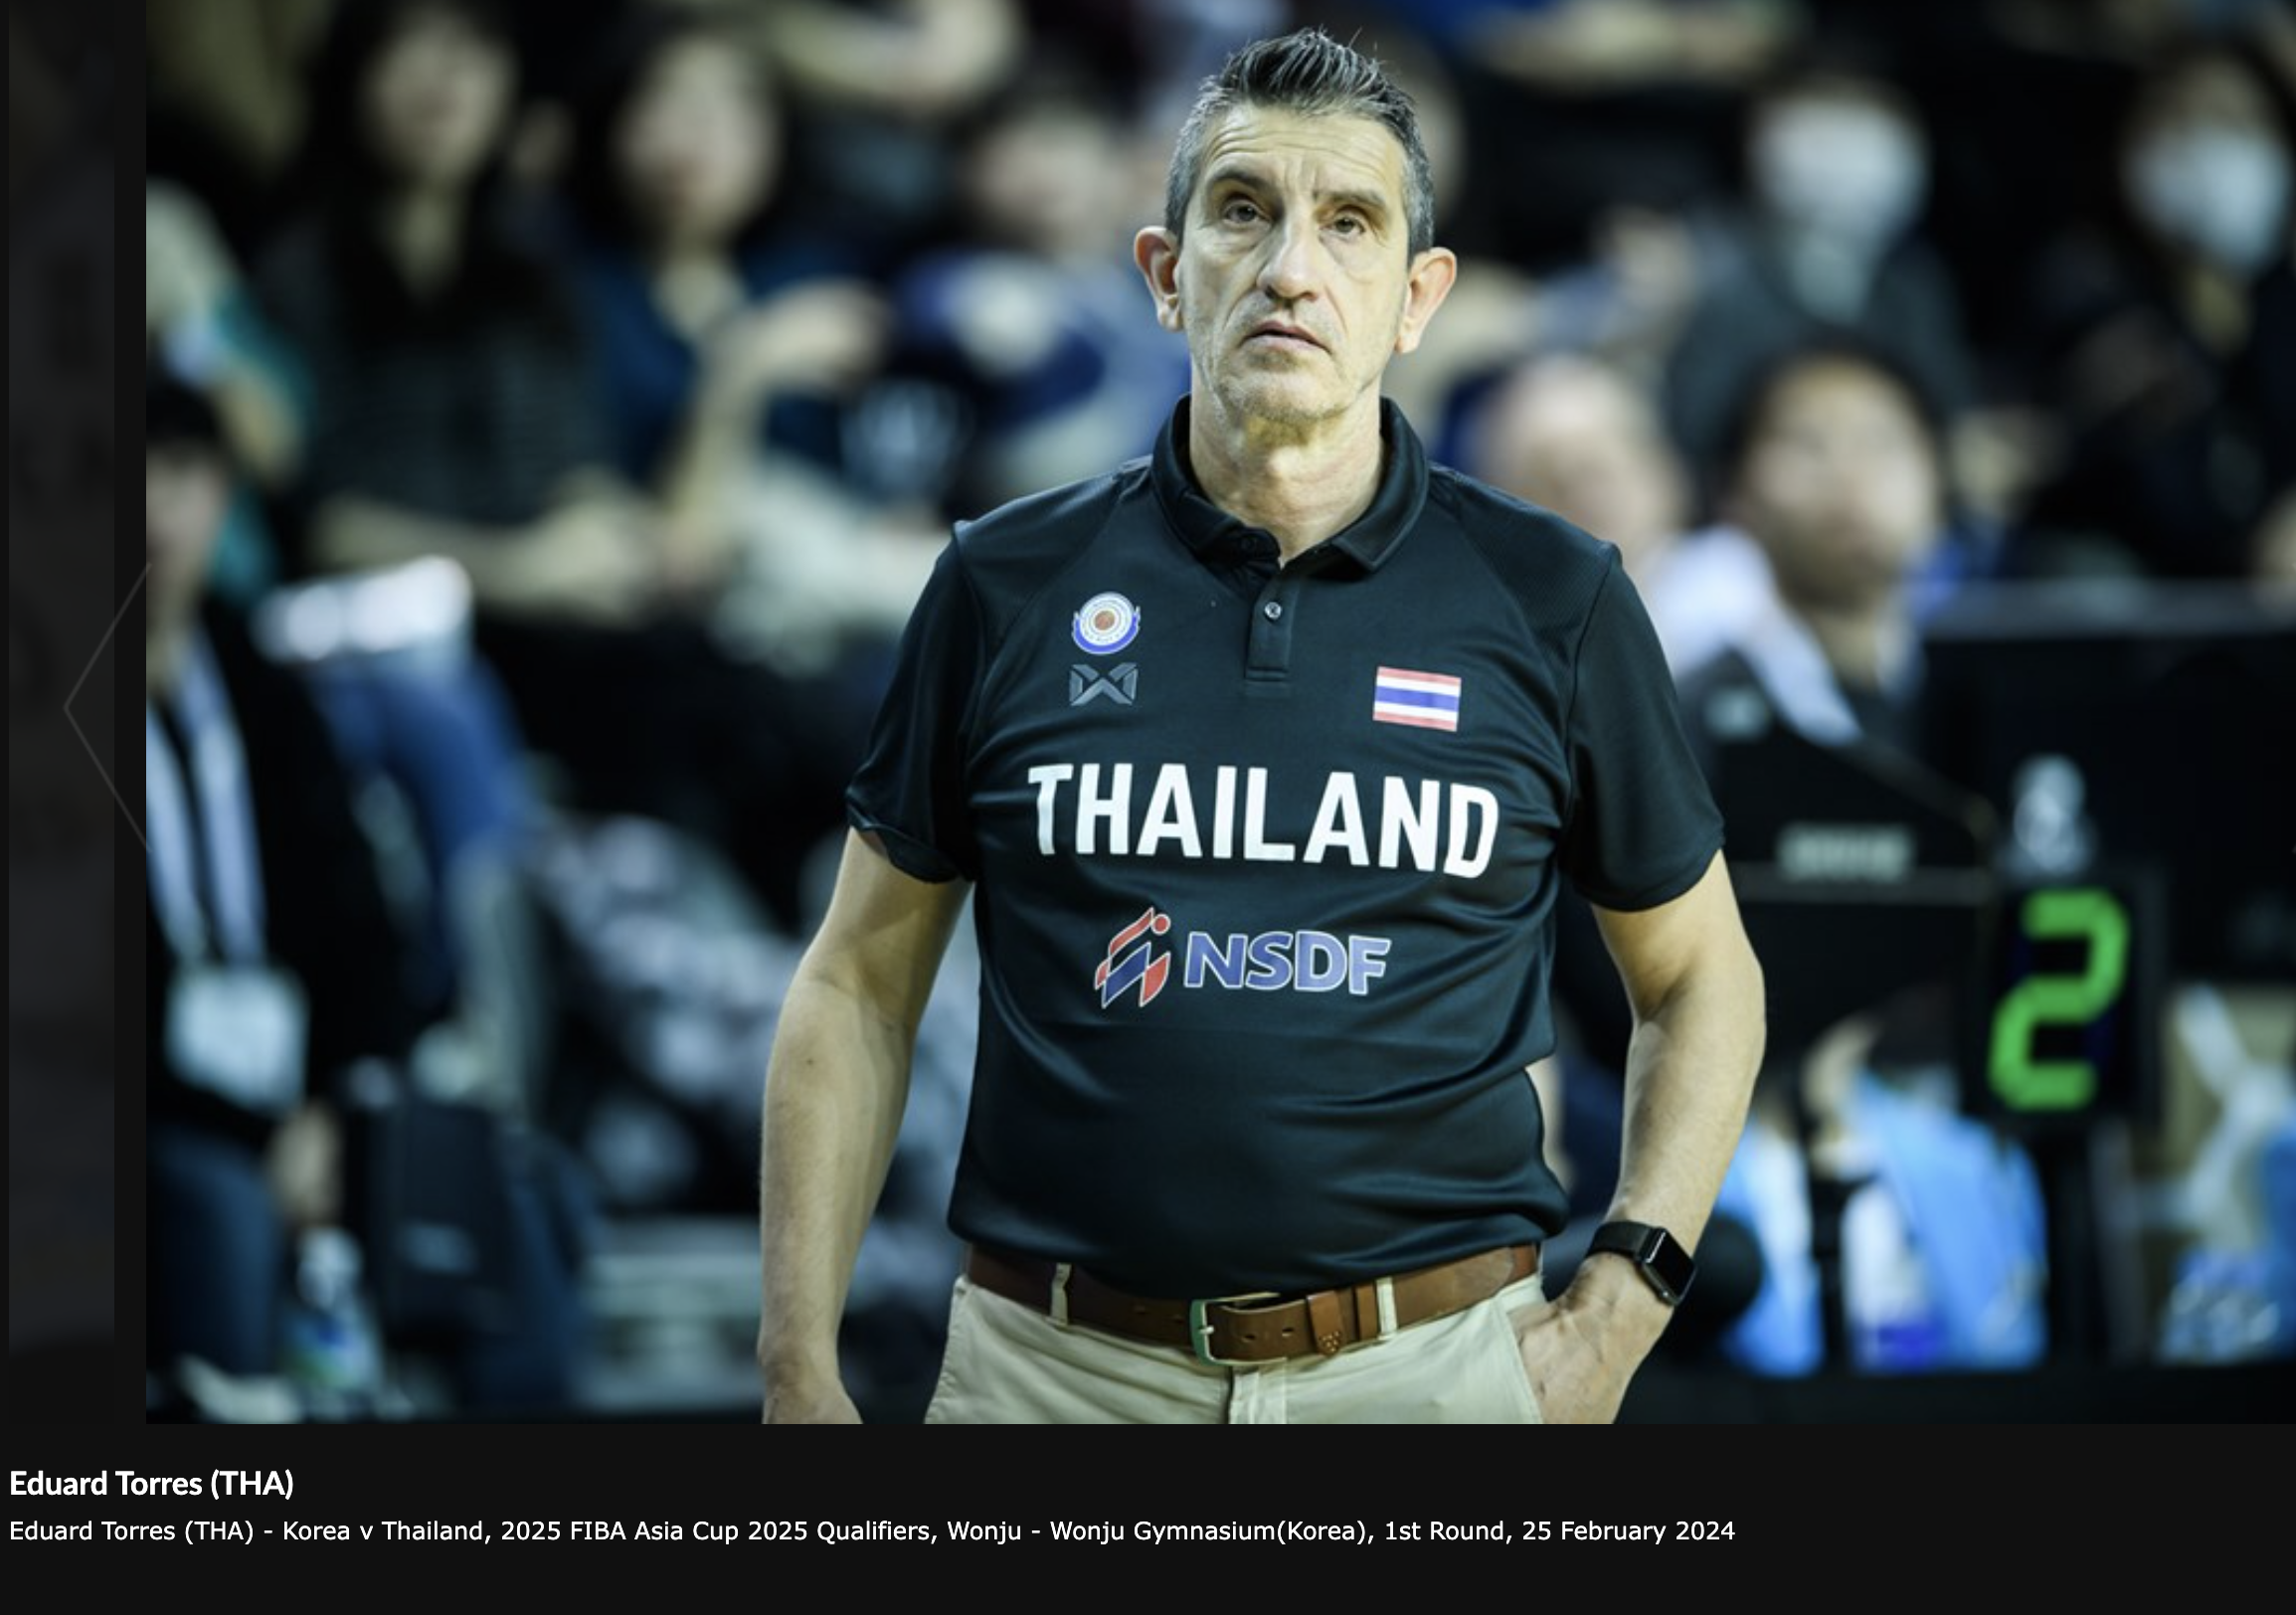 2025 FIBA 아시아컵 예선 한국과 태국의 경기 중 에두어드 토레스 태국 대표팀 감독님 모습입니다.